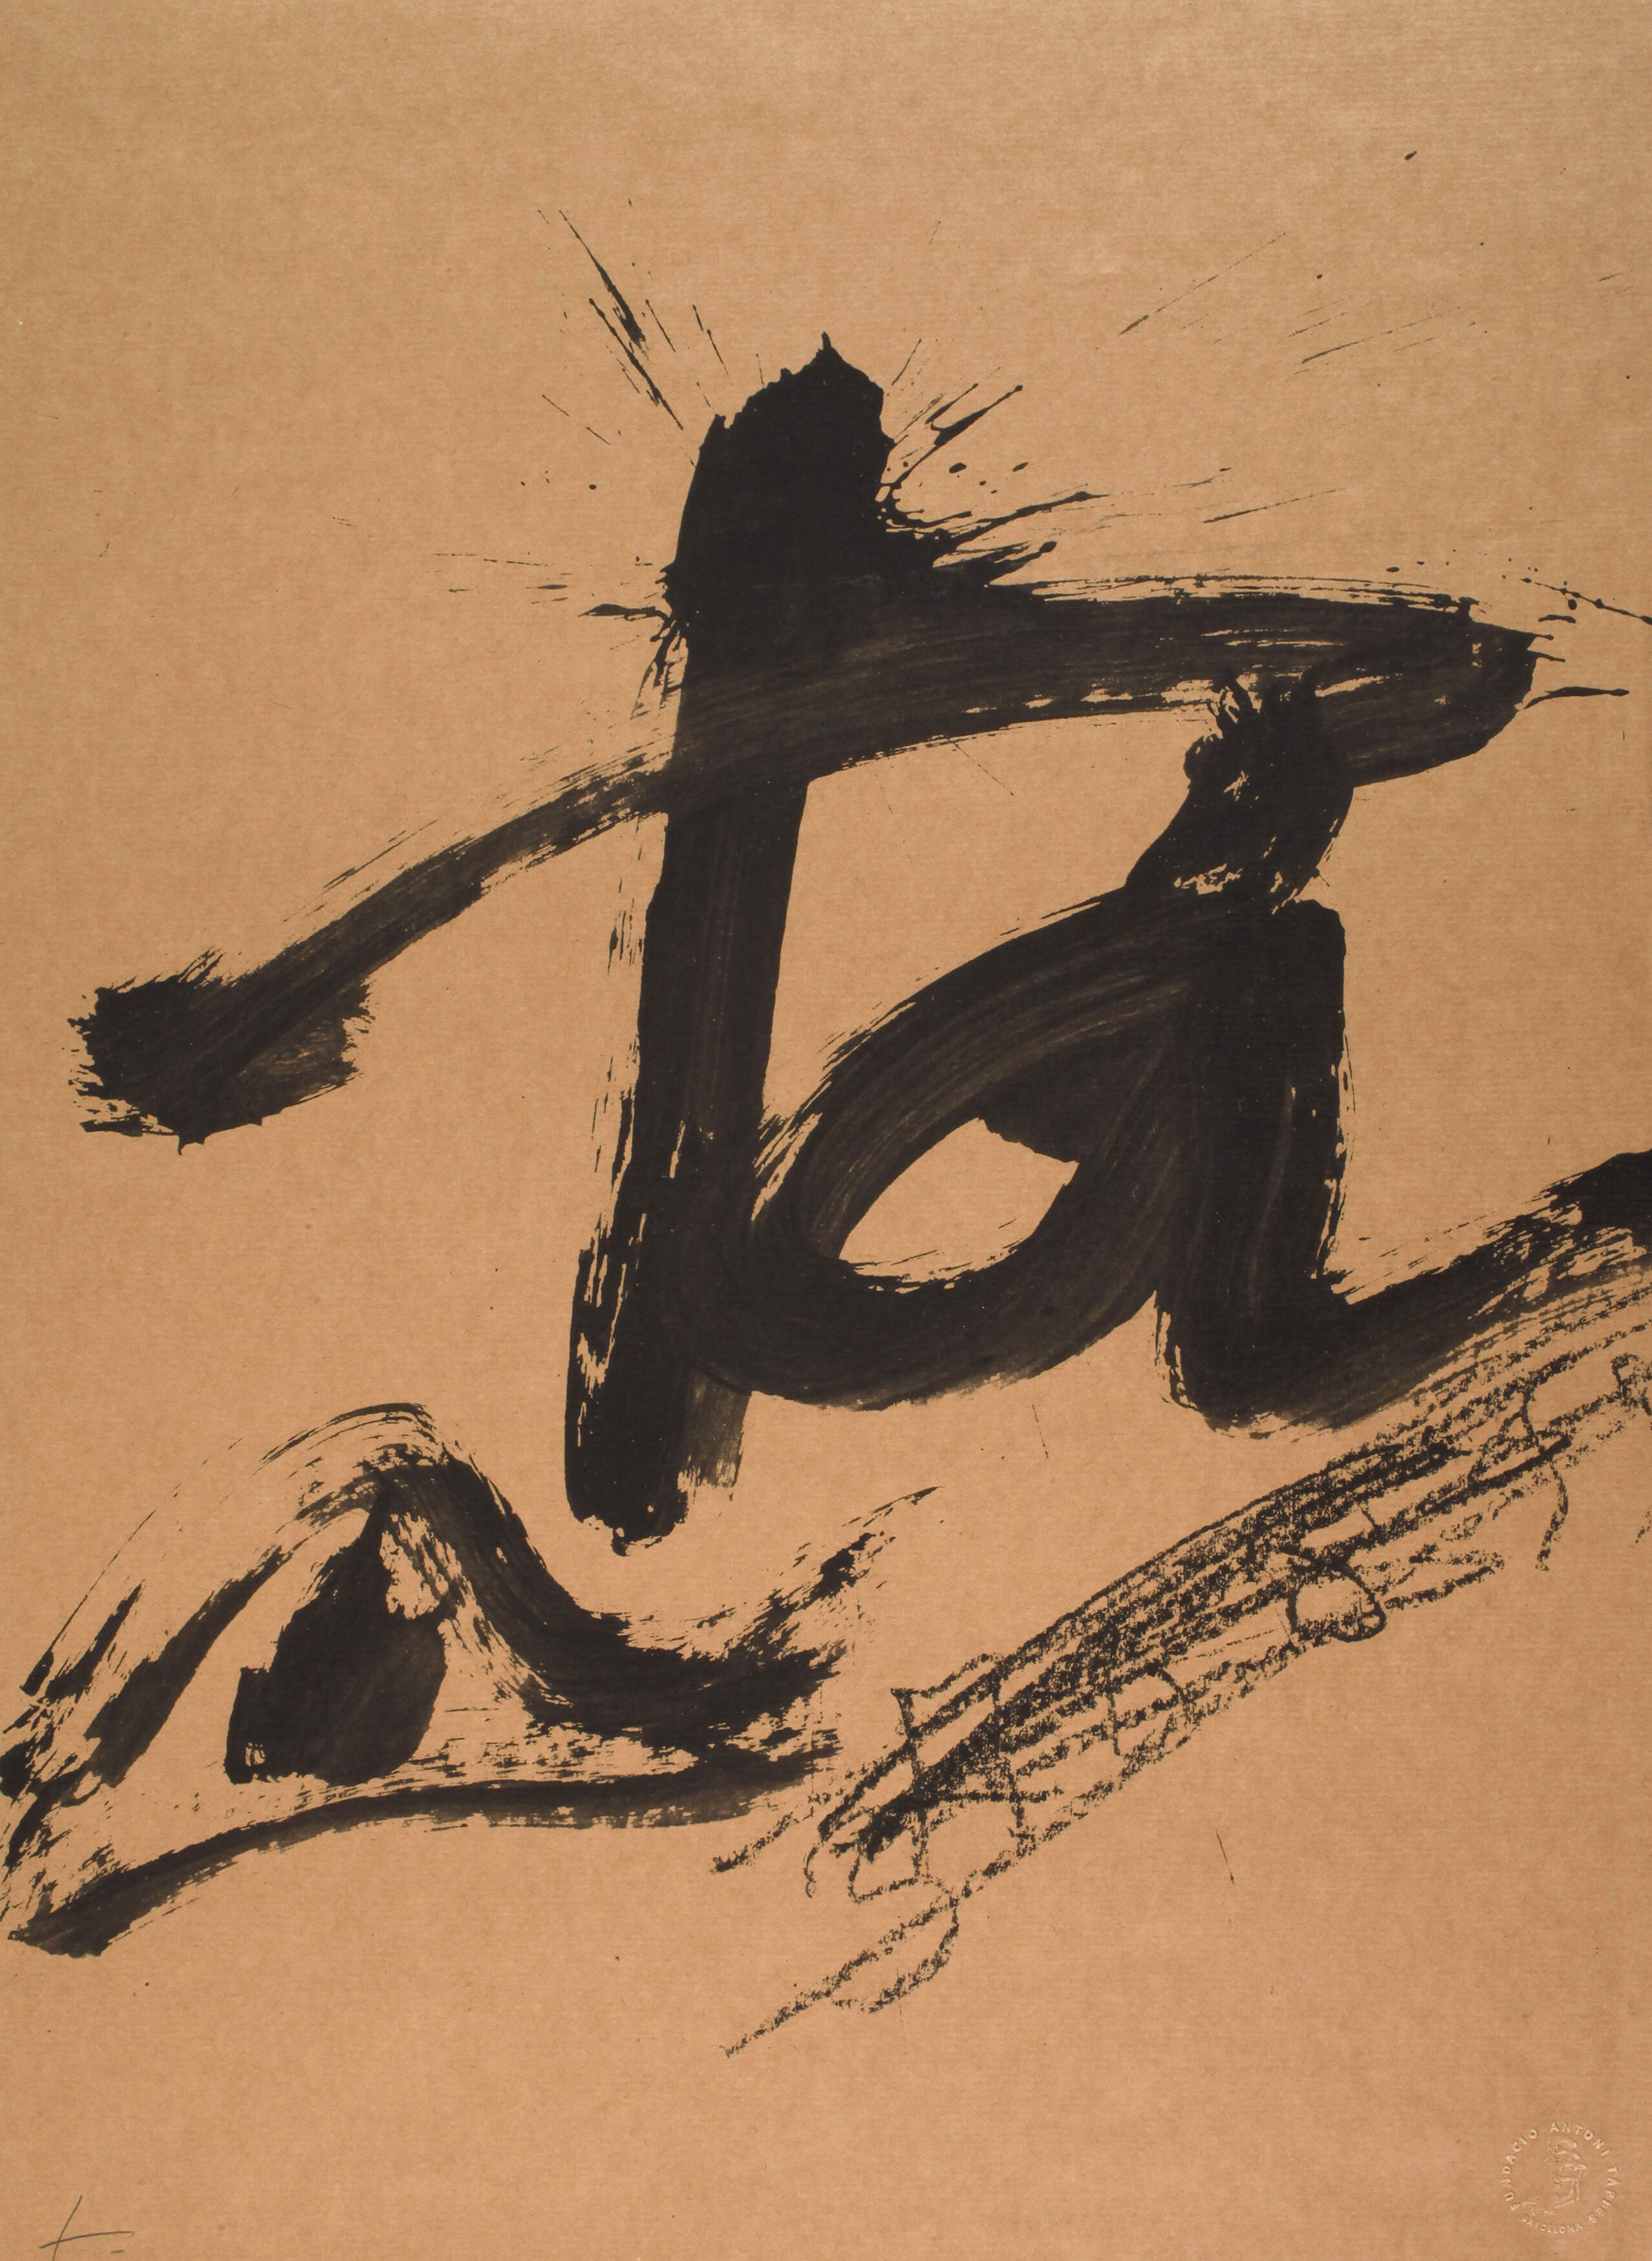 Antoni Tàpies, Ungegenständliche Komposition